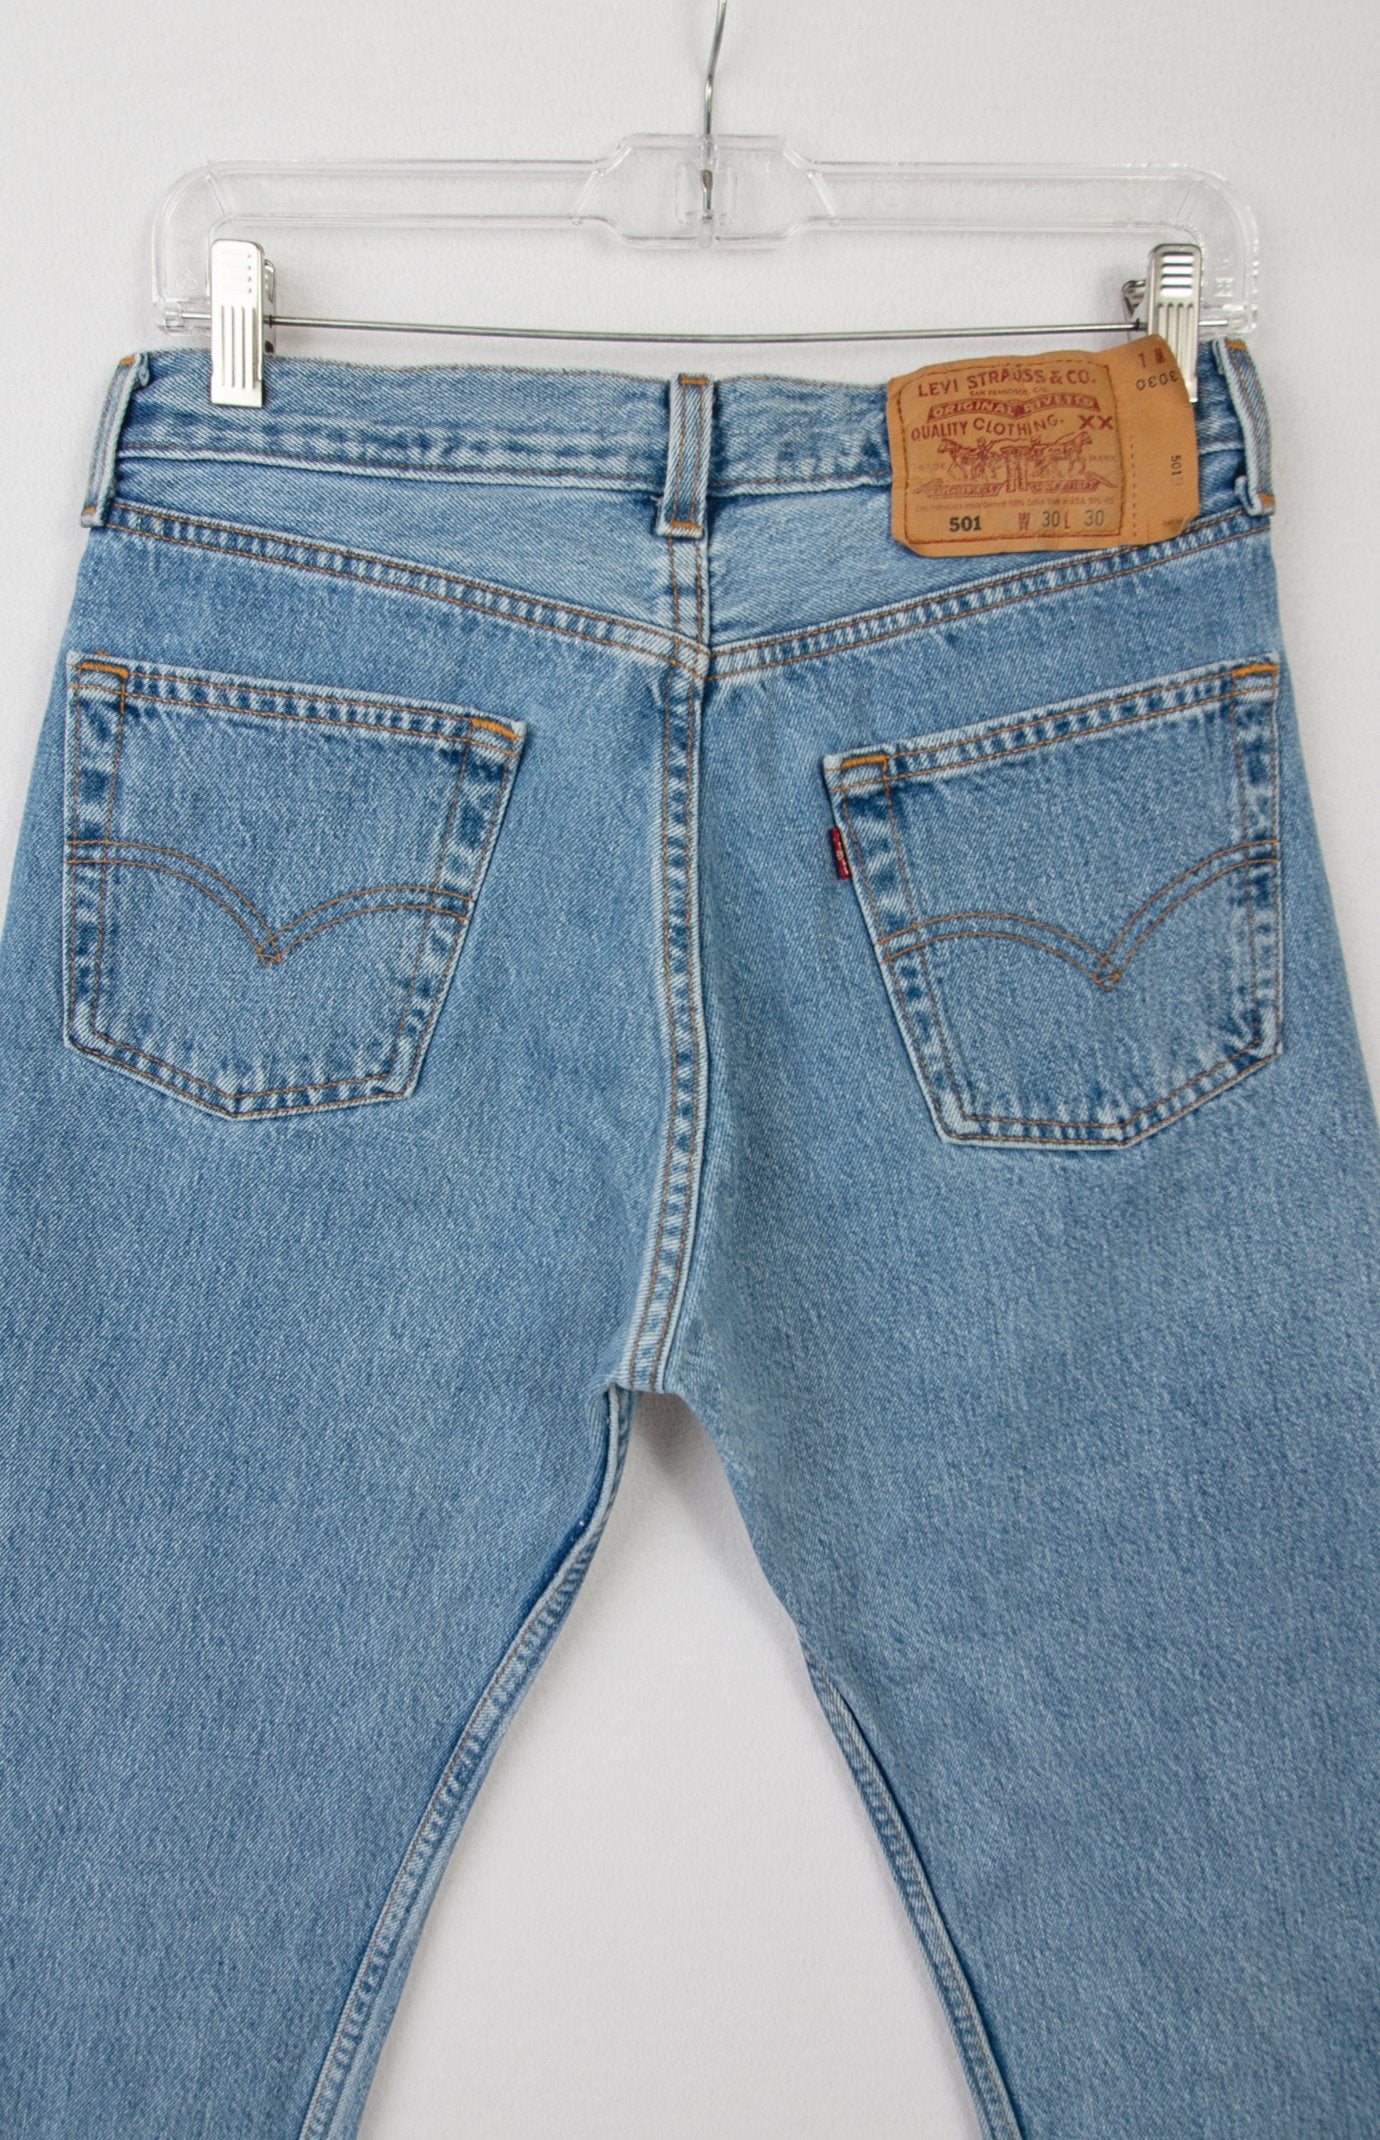 Levi's 501 Jeans, Vintage Levis Jeans